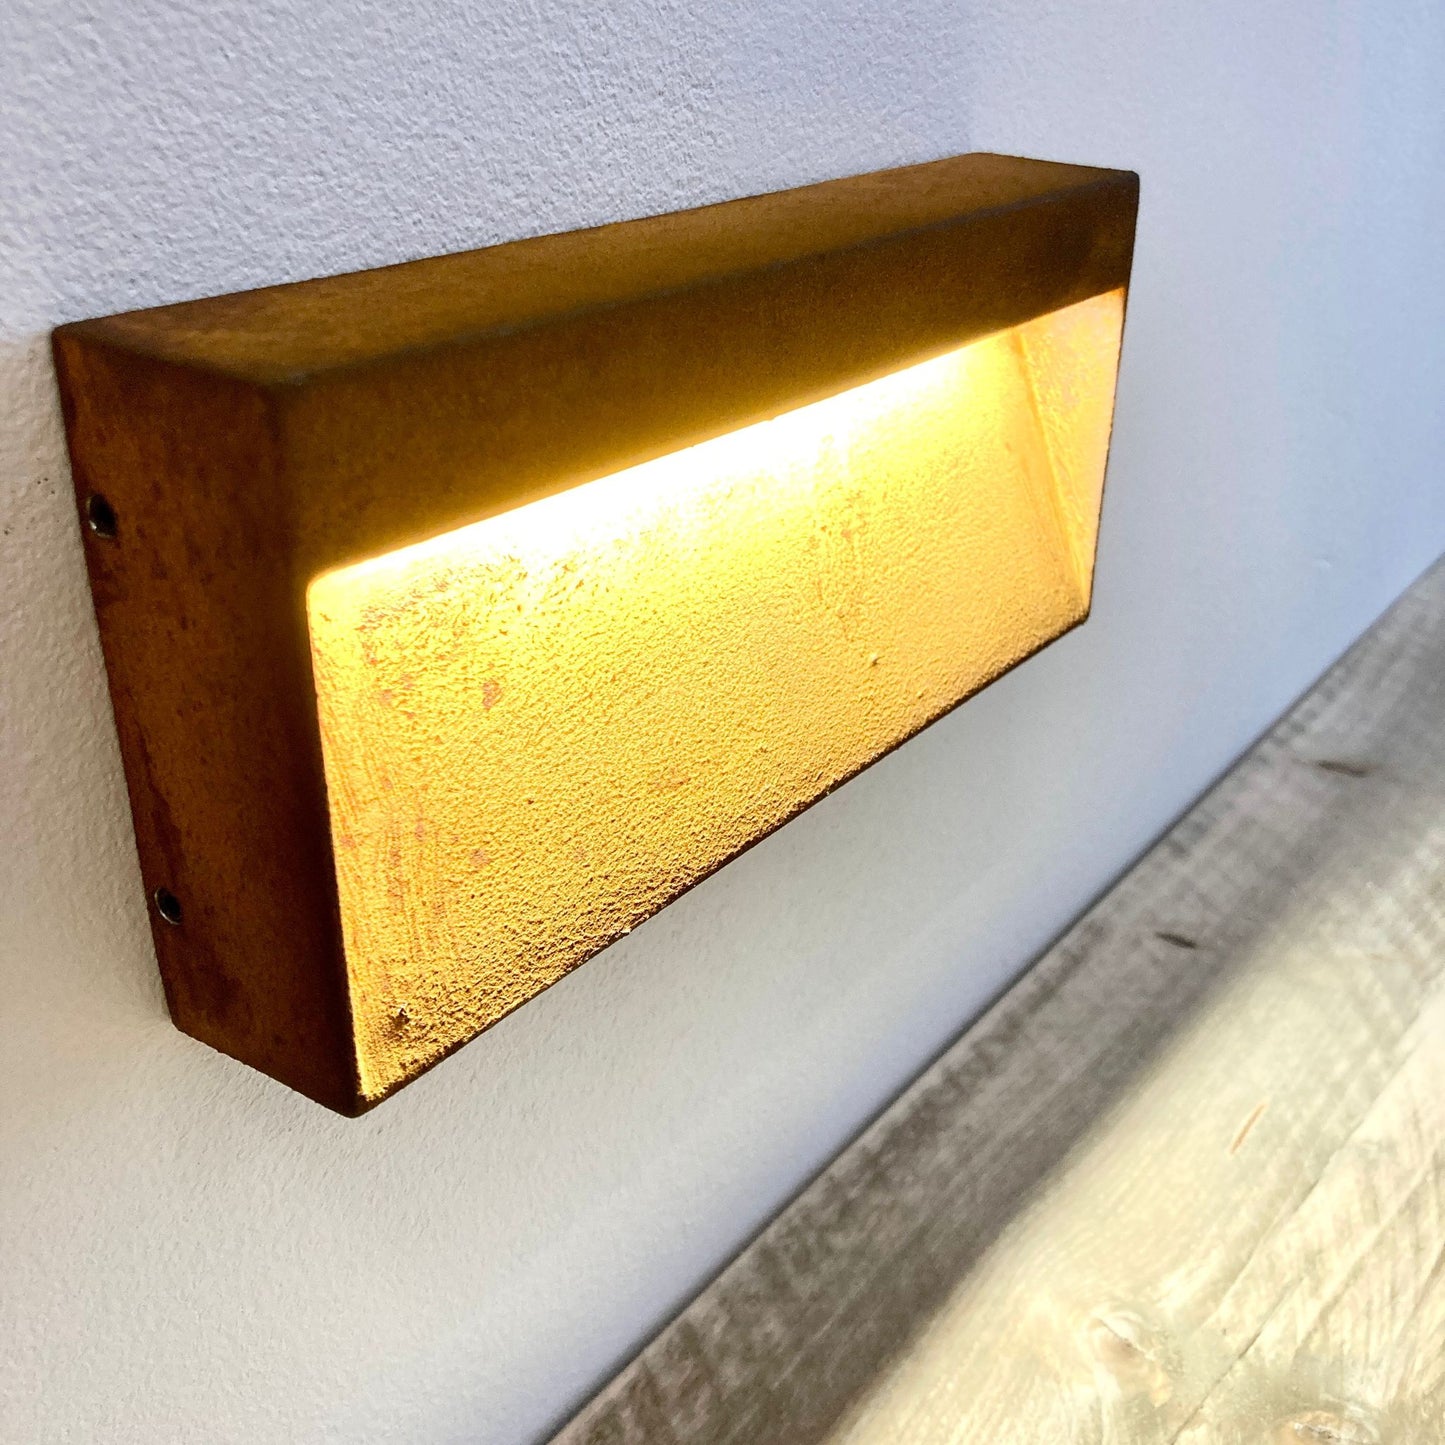 Außen-LED-Wandleuchte, Wandlampe - Effektvolles Architekturlicht, Rostiges Design - LuminaRust No. 551